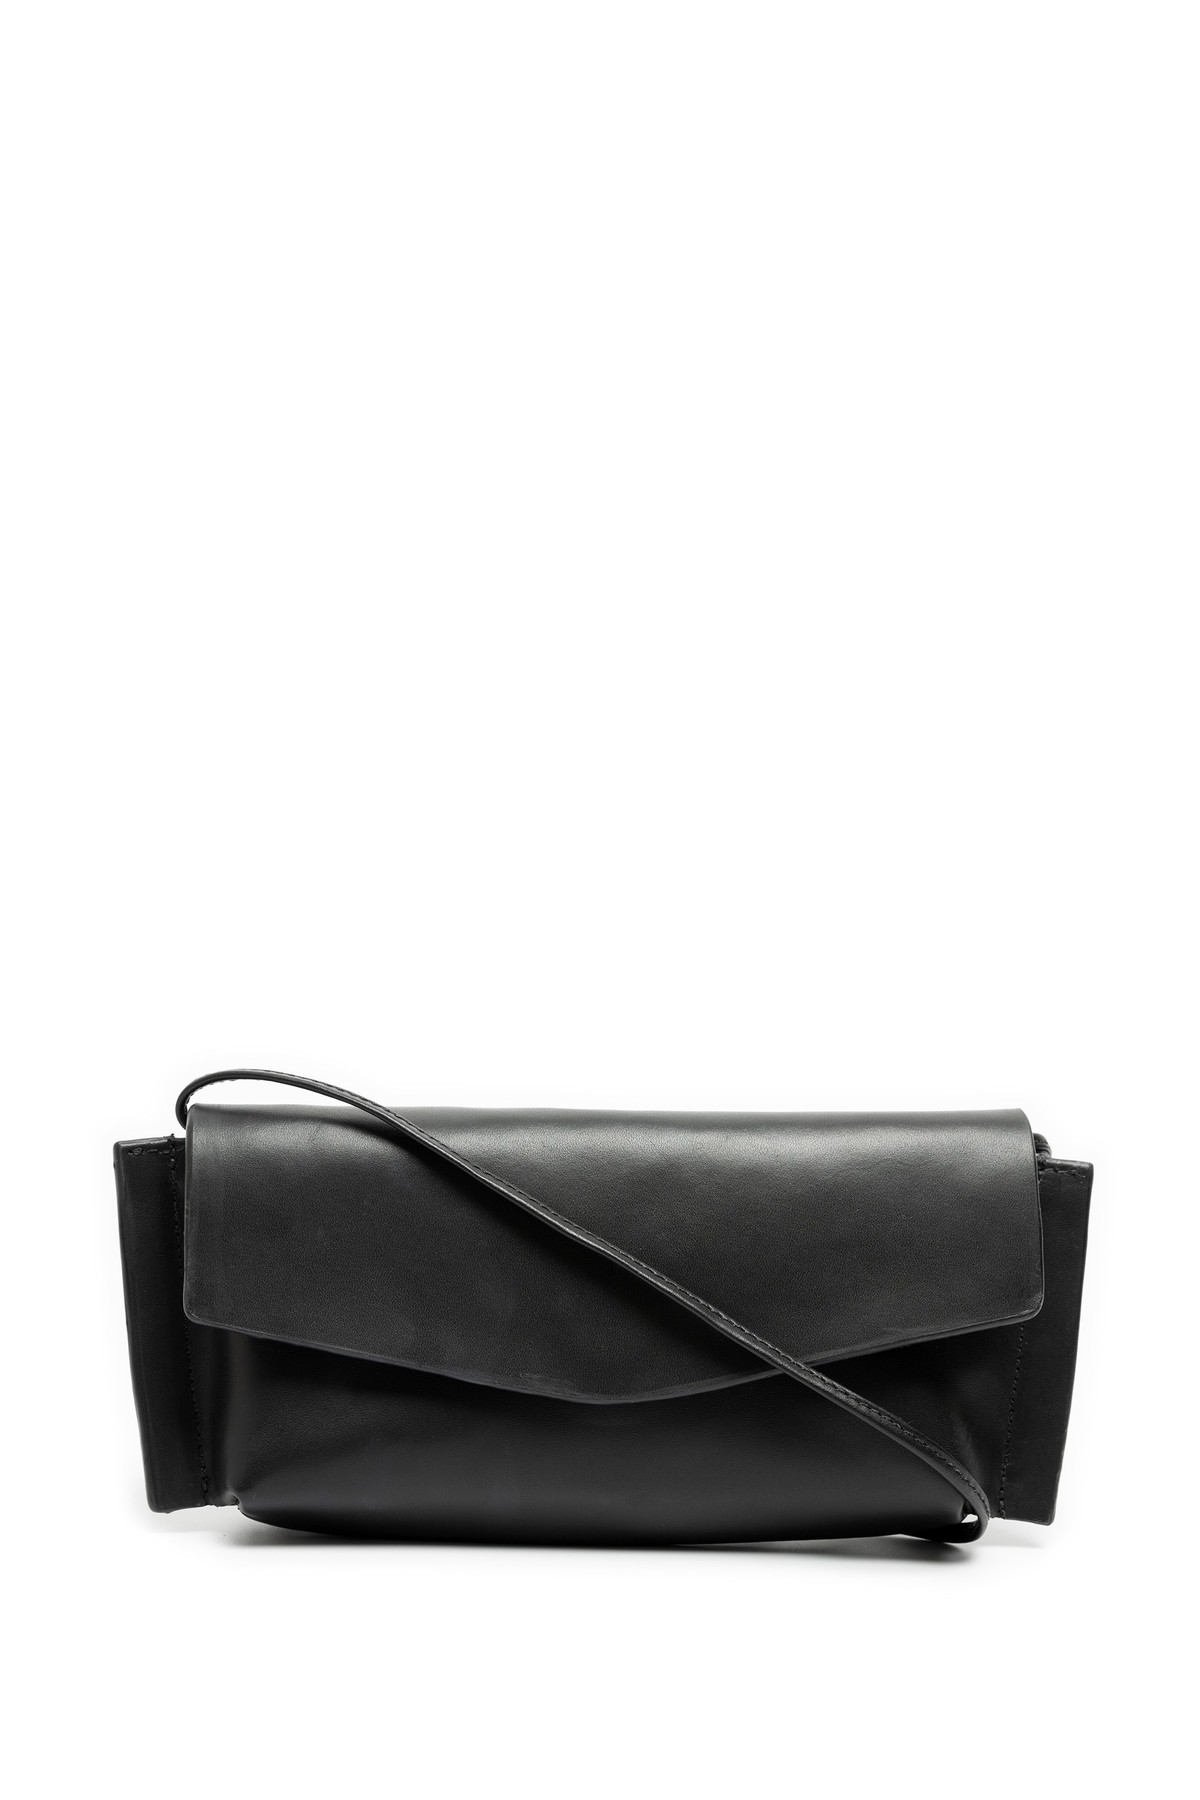 bolsa clutch em couro com alça | clutch leather bag with strap